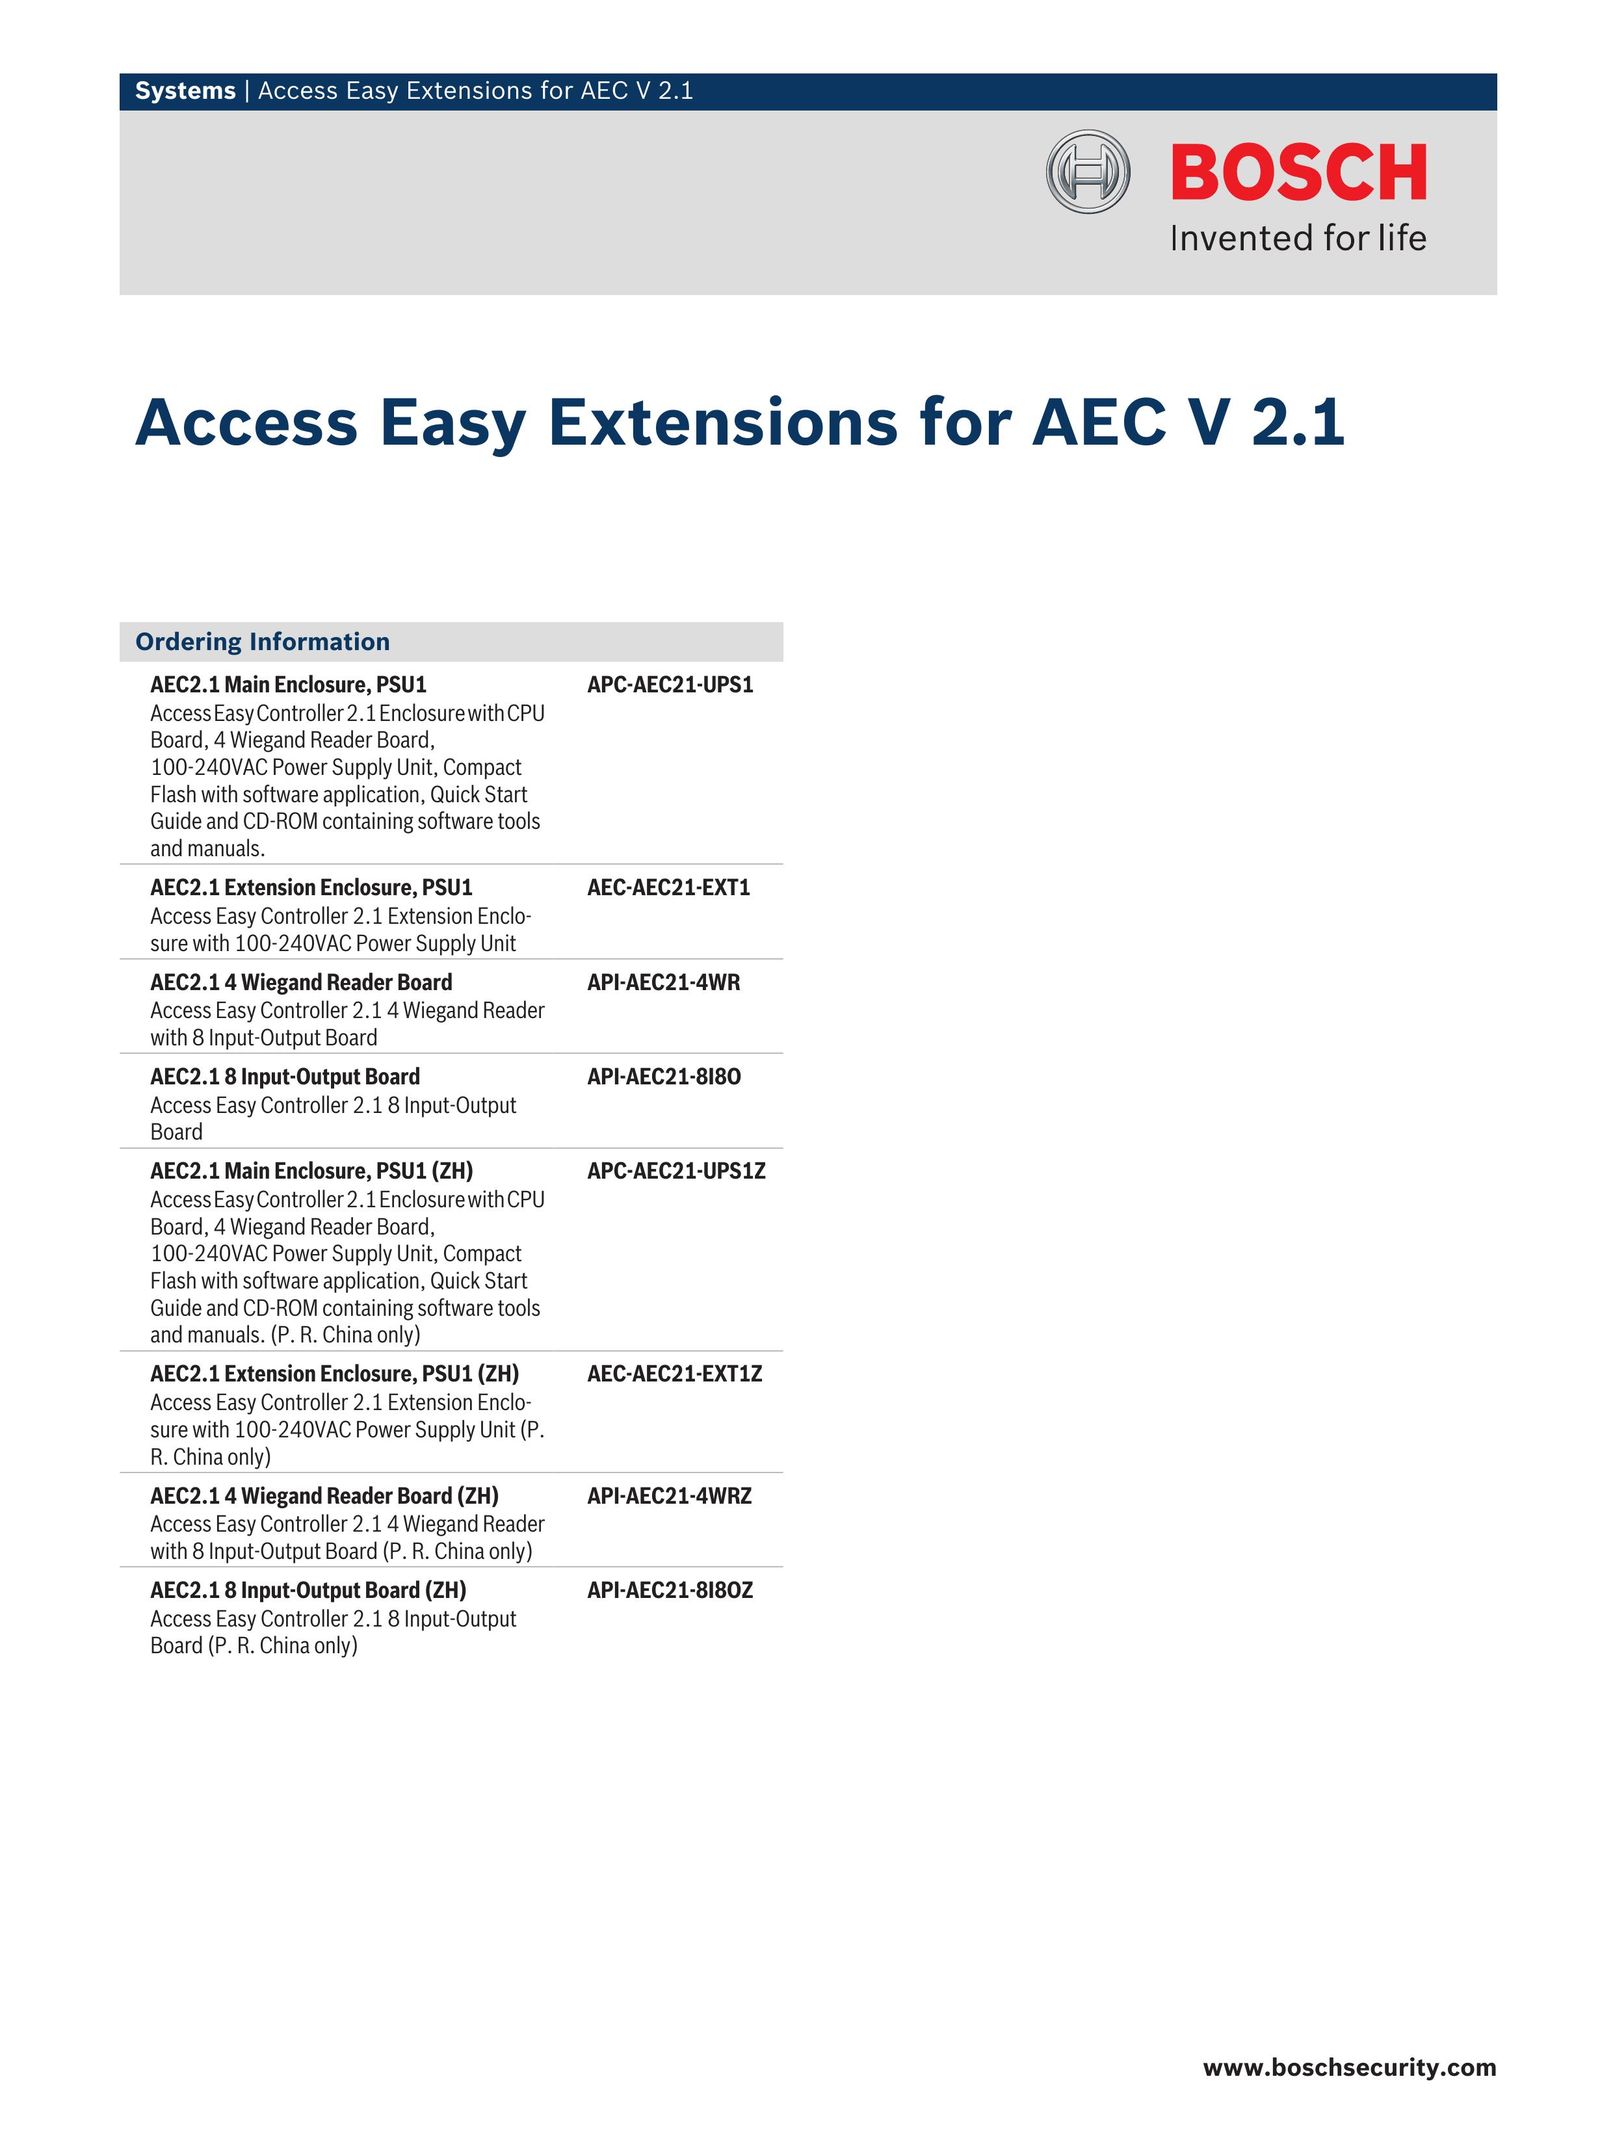 Bosch Appliances API-AEC21-4WR Home Security System User Manual